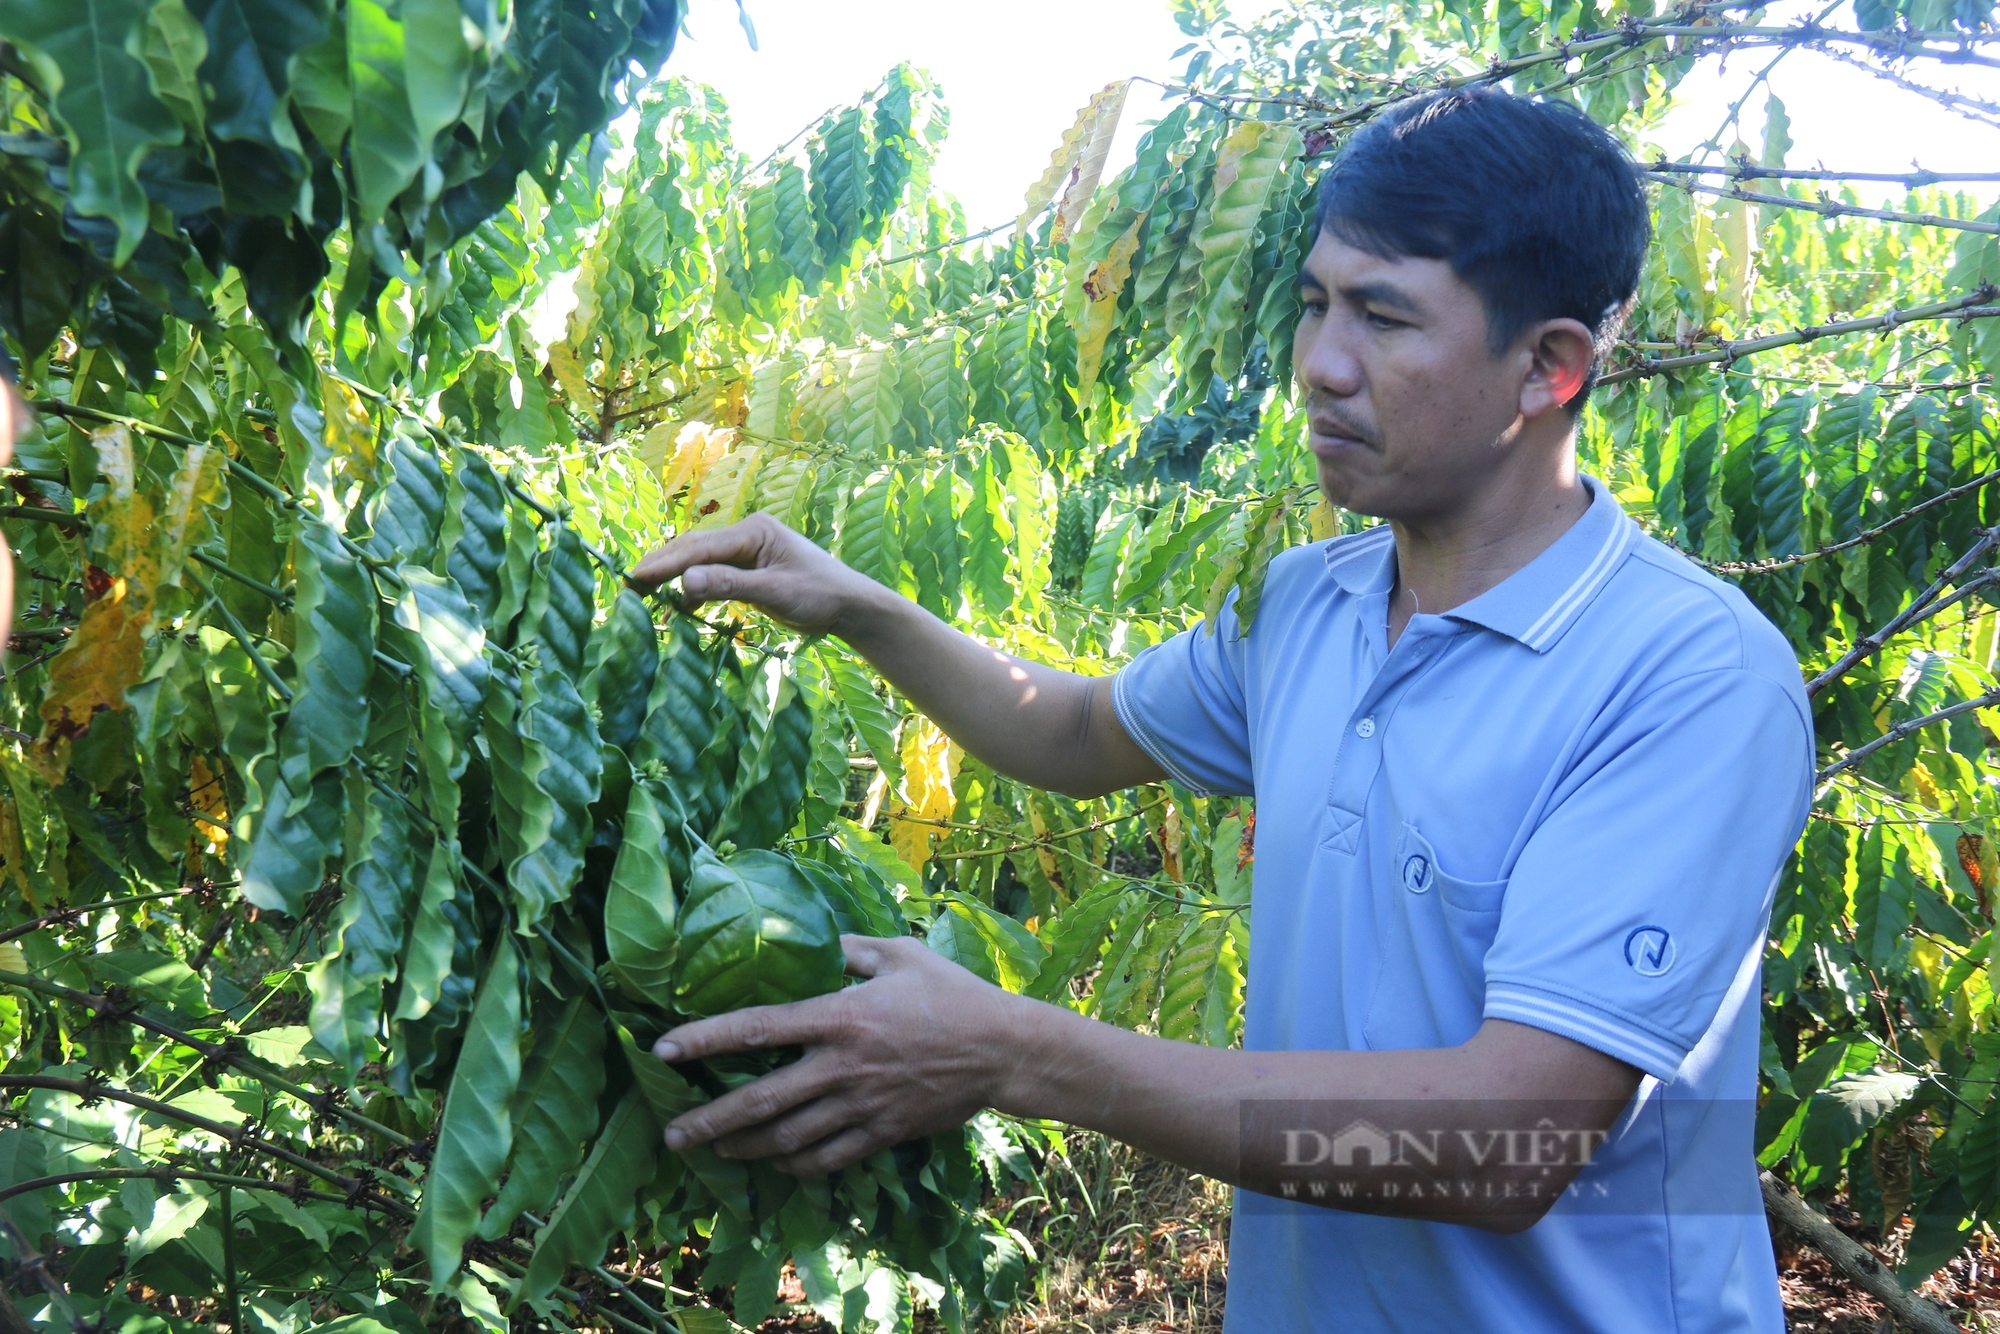 Một nơi ở Gia Lai, nông dân rủ nhau trồng cà phê kiểu gì mà sản lượng tăng, giá bán lại cao?- Ảnh 1.